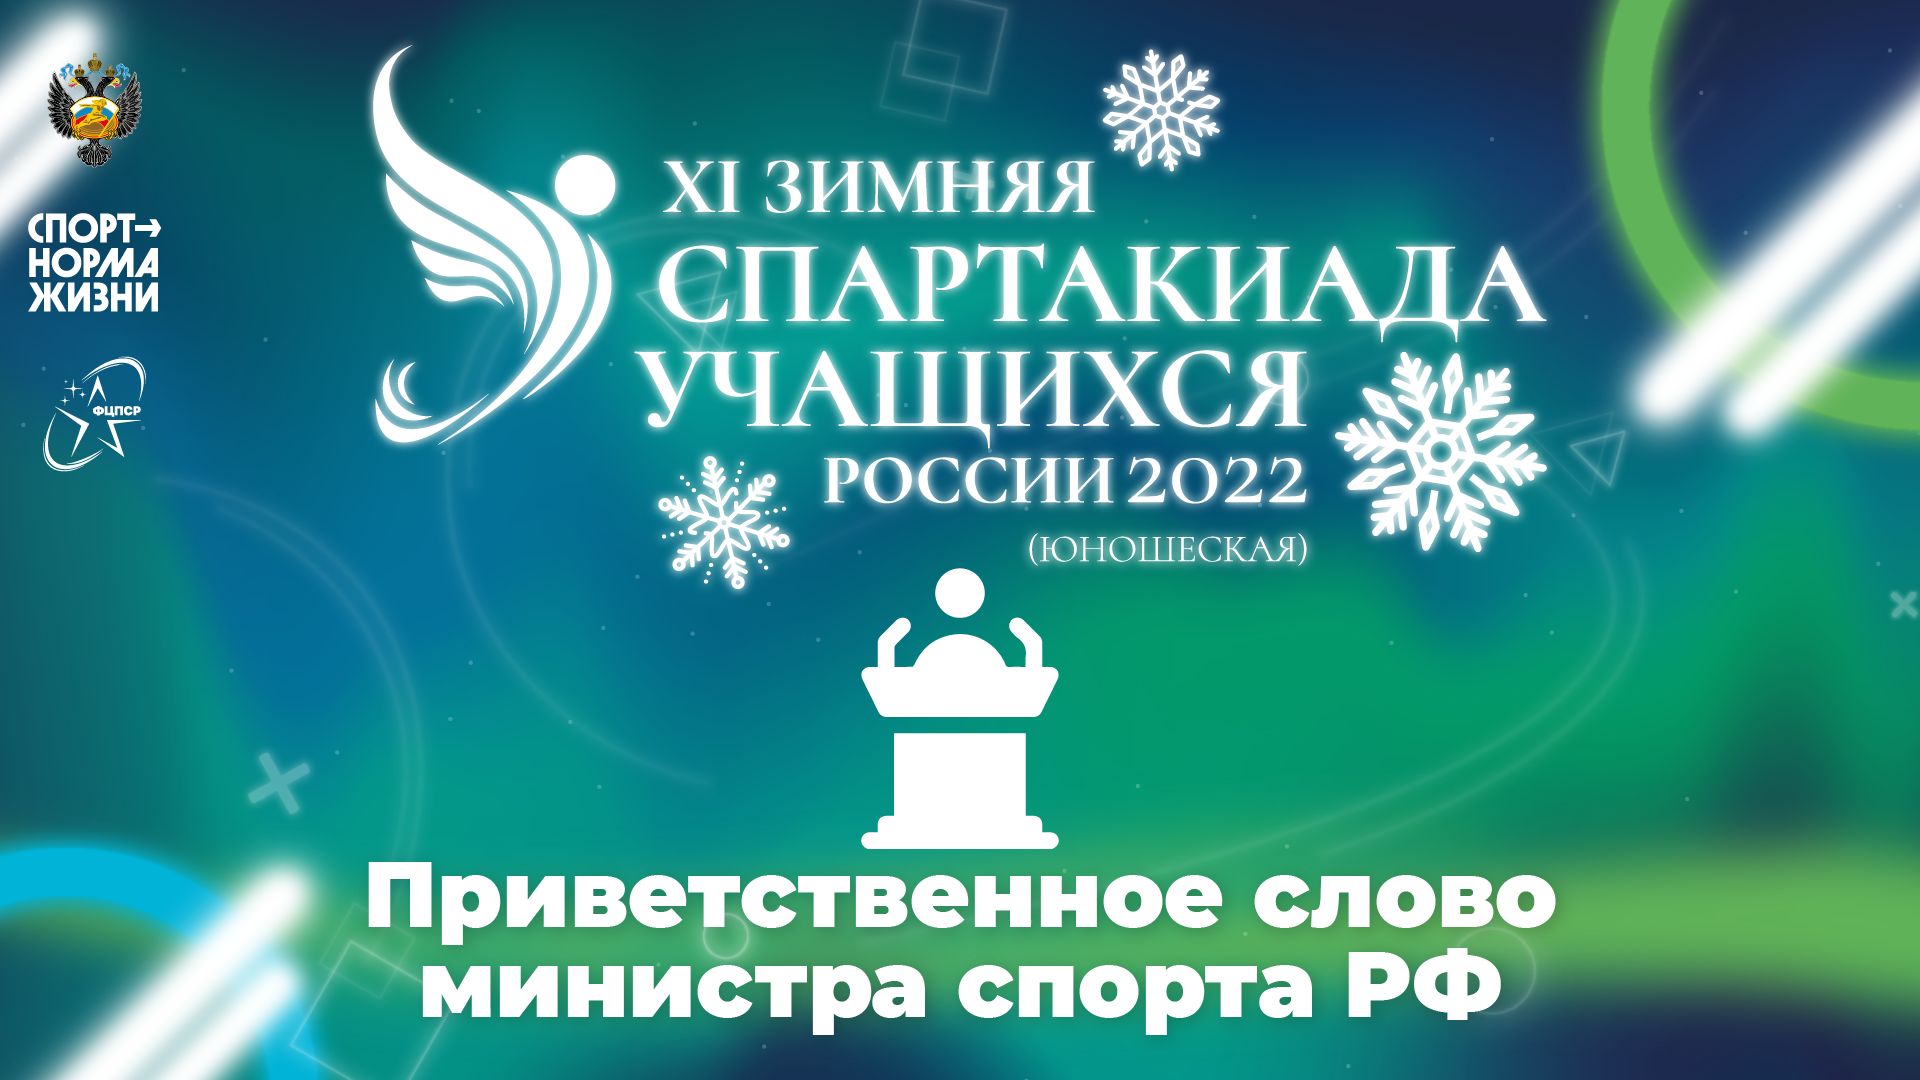 XI зимняя Спартакиада учащихся России 2022 года. Приветственное слово министра спорта РФ